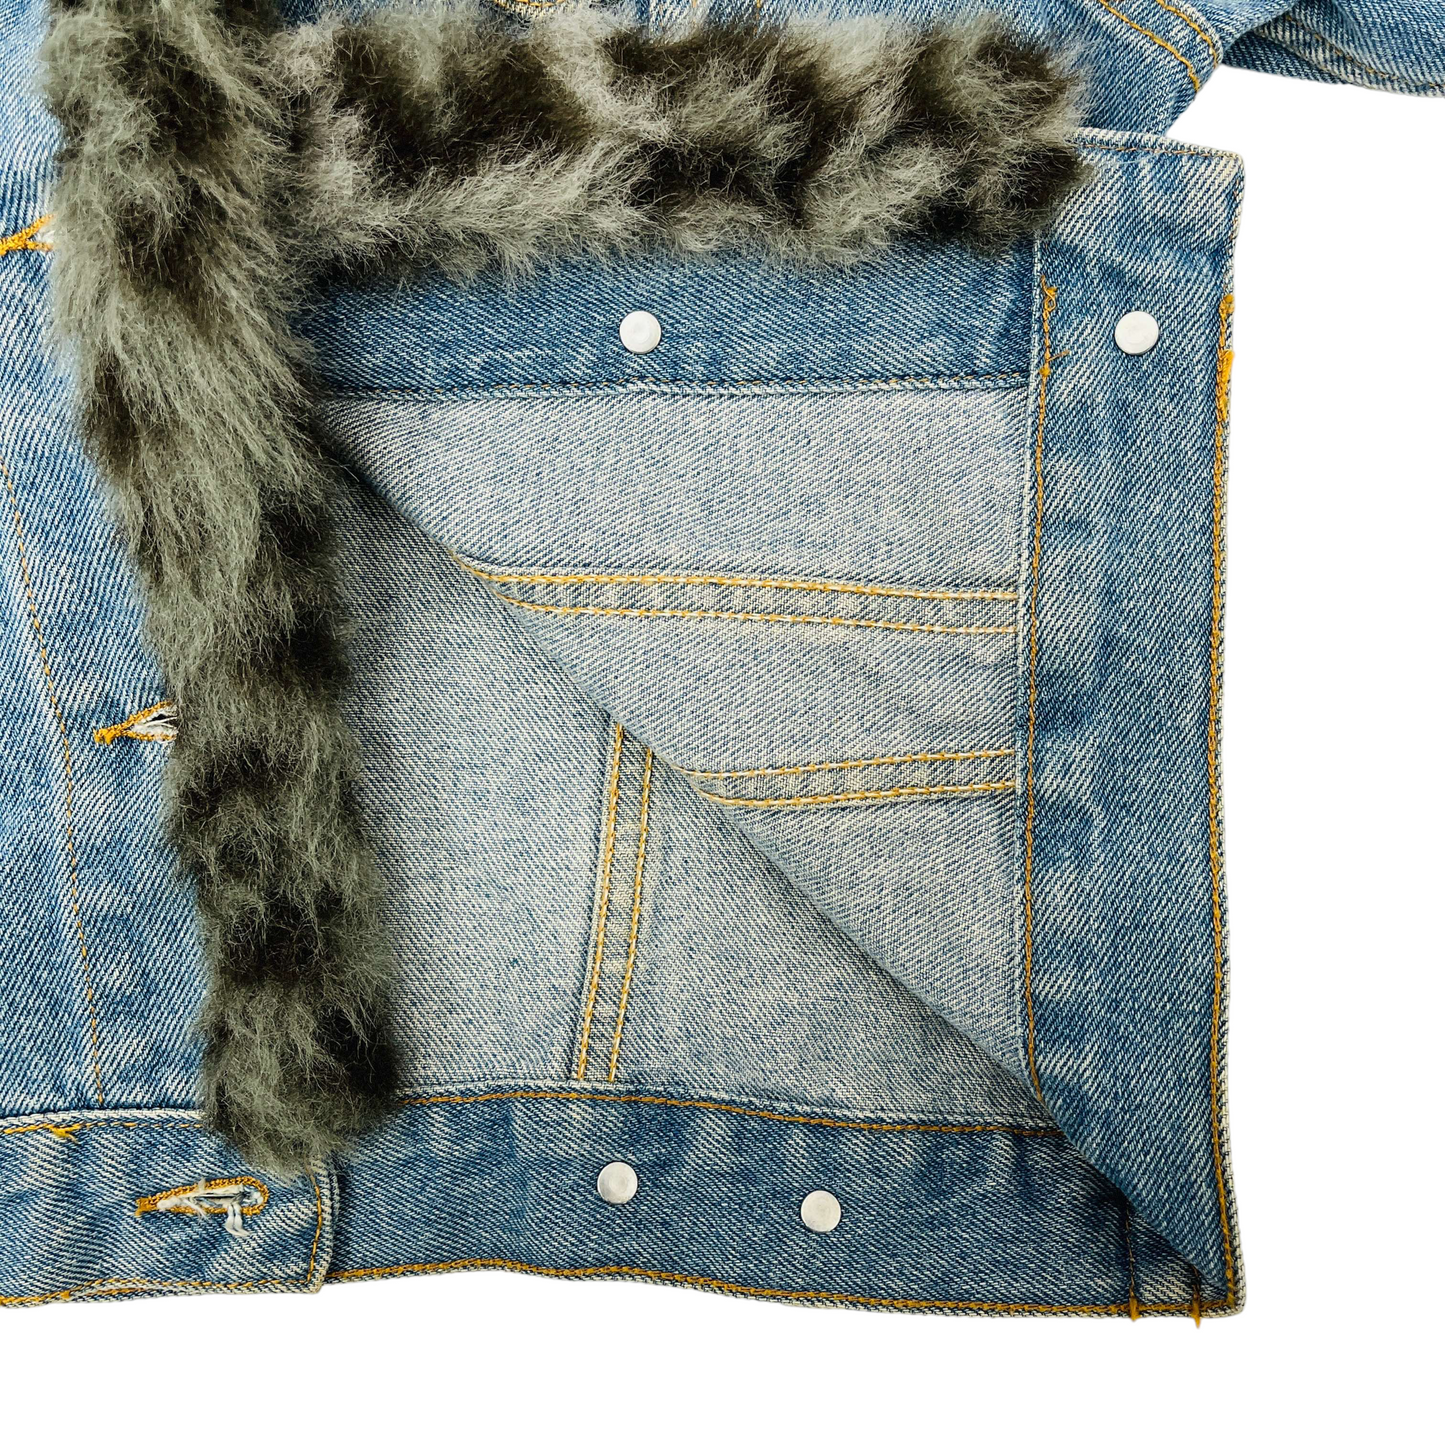 
                  
                    Ladies Y2K Fur Trim Jacket - Small
                  
                